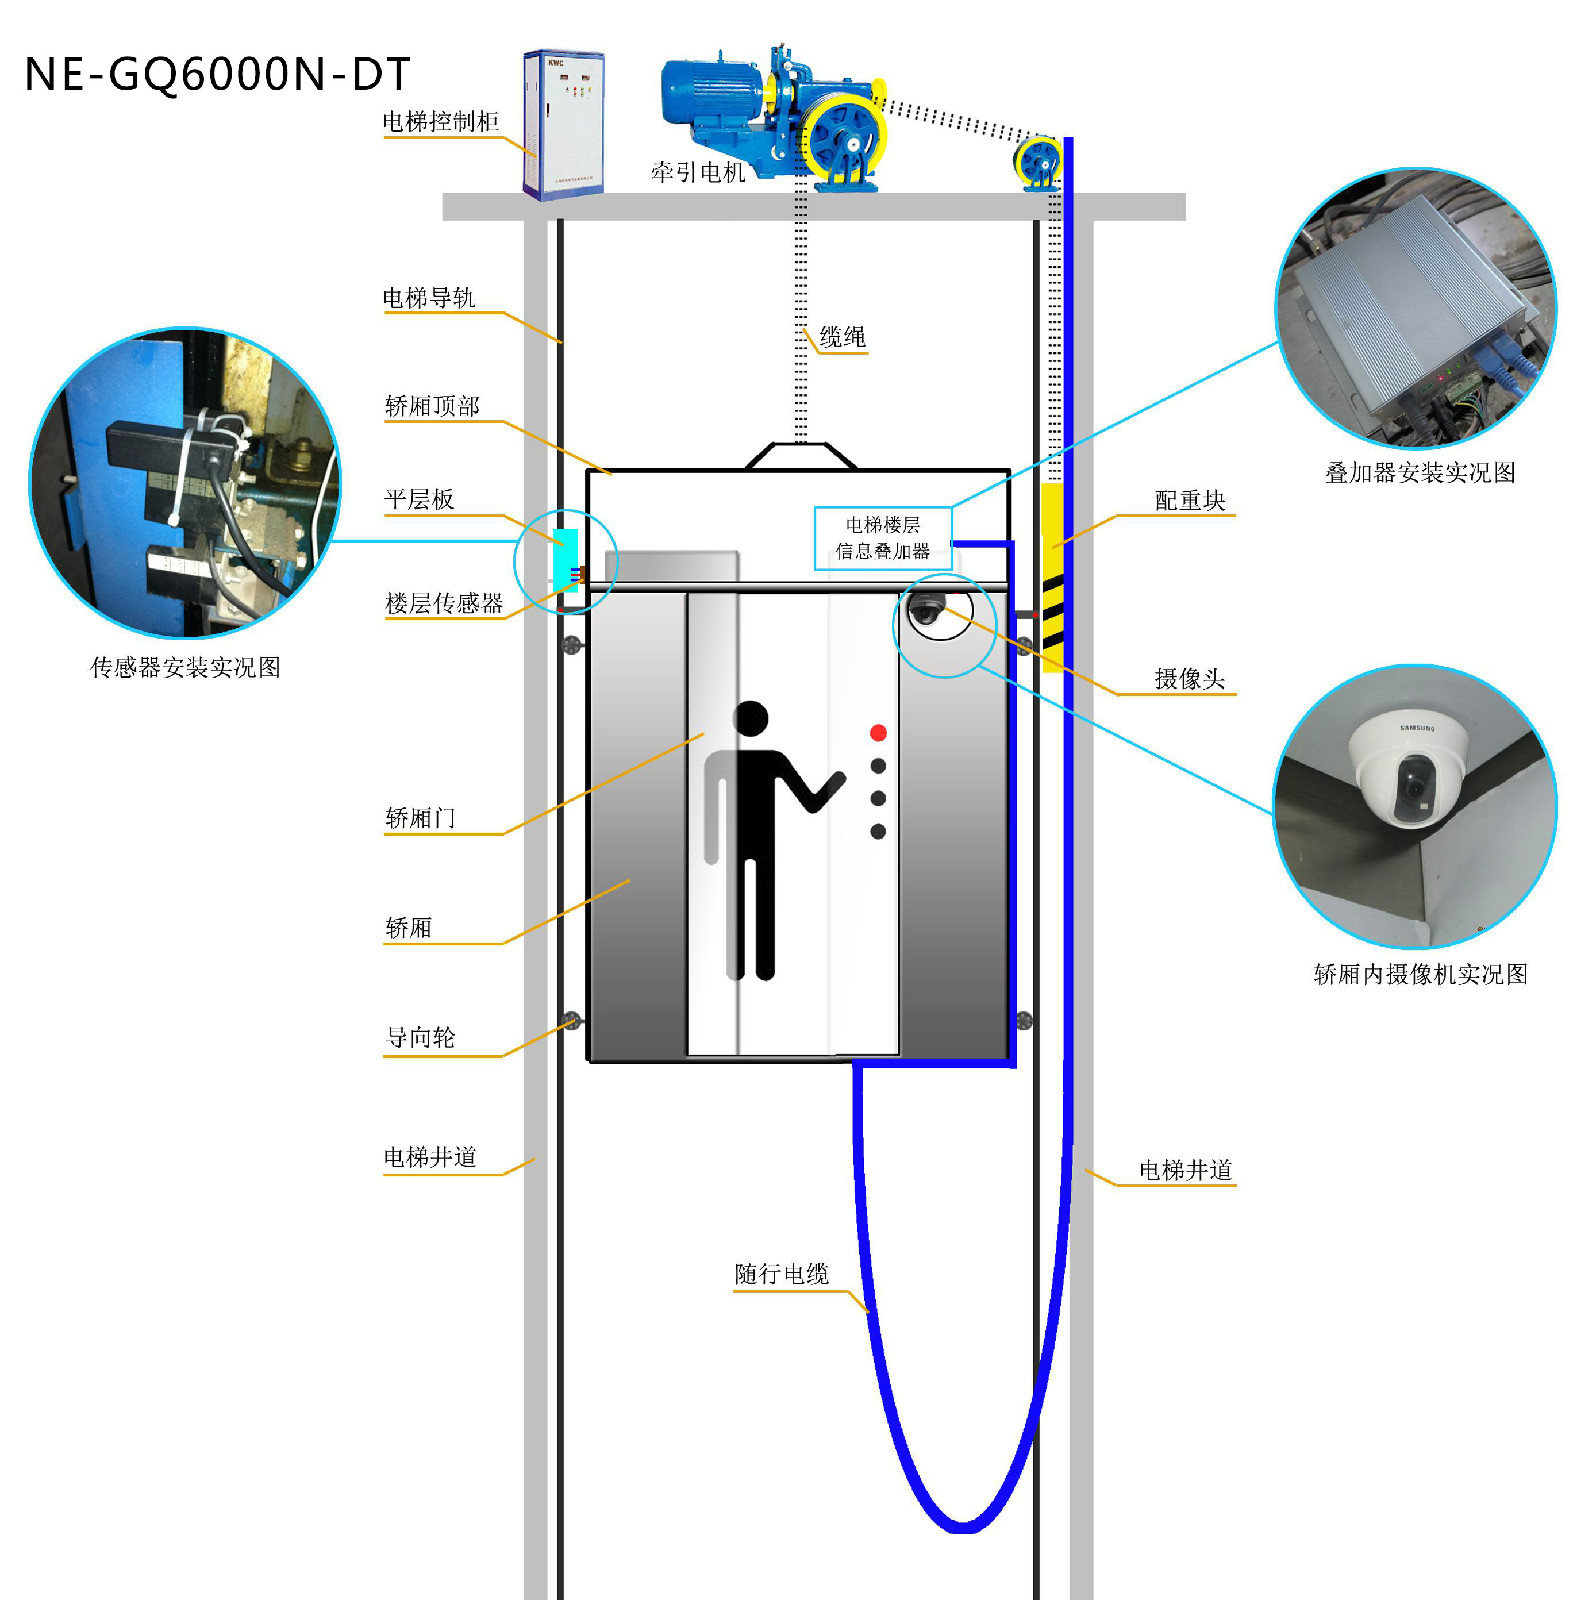 電梯樓層顯示器與感測器相對位置安裝示意圖